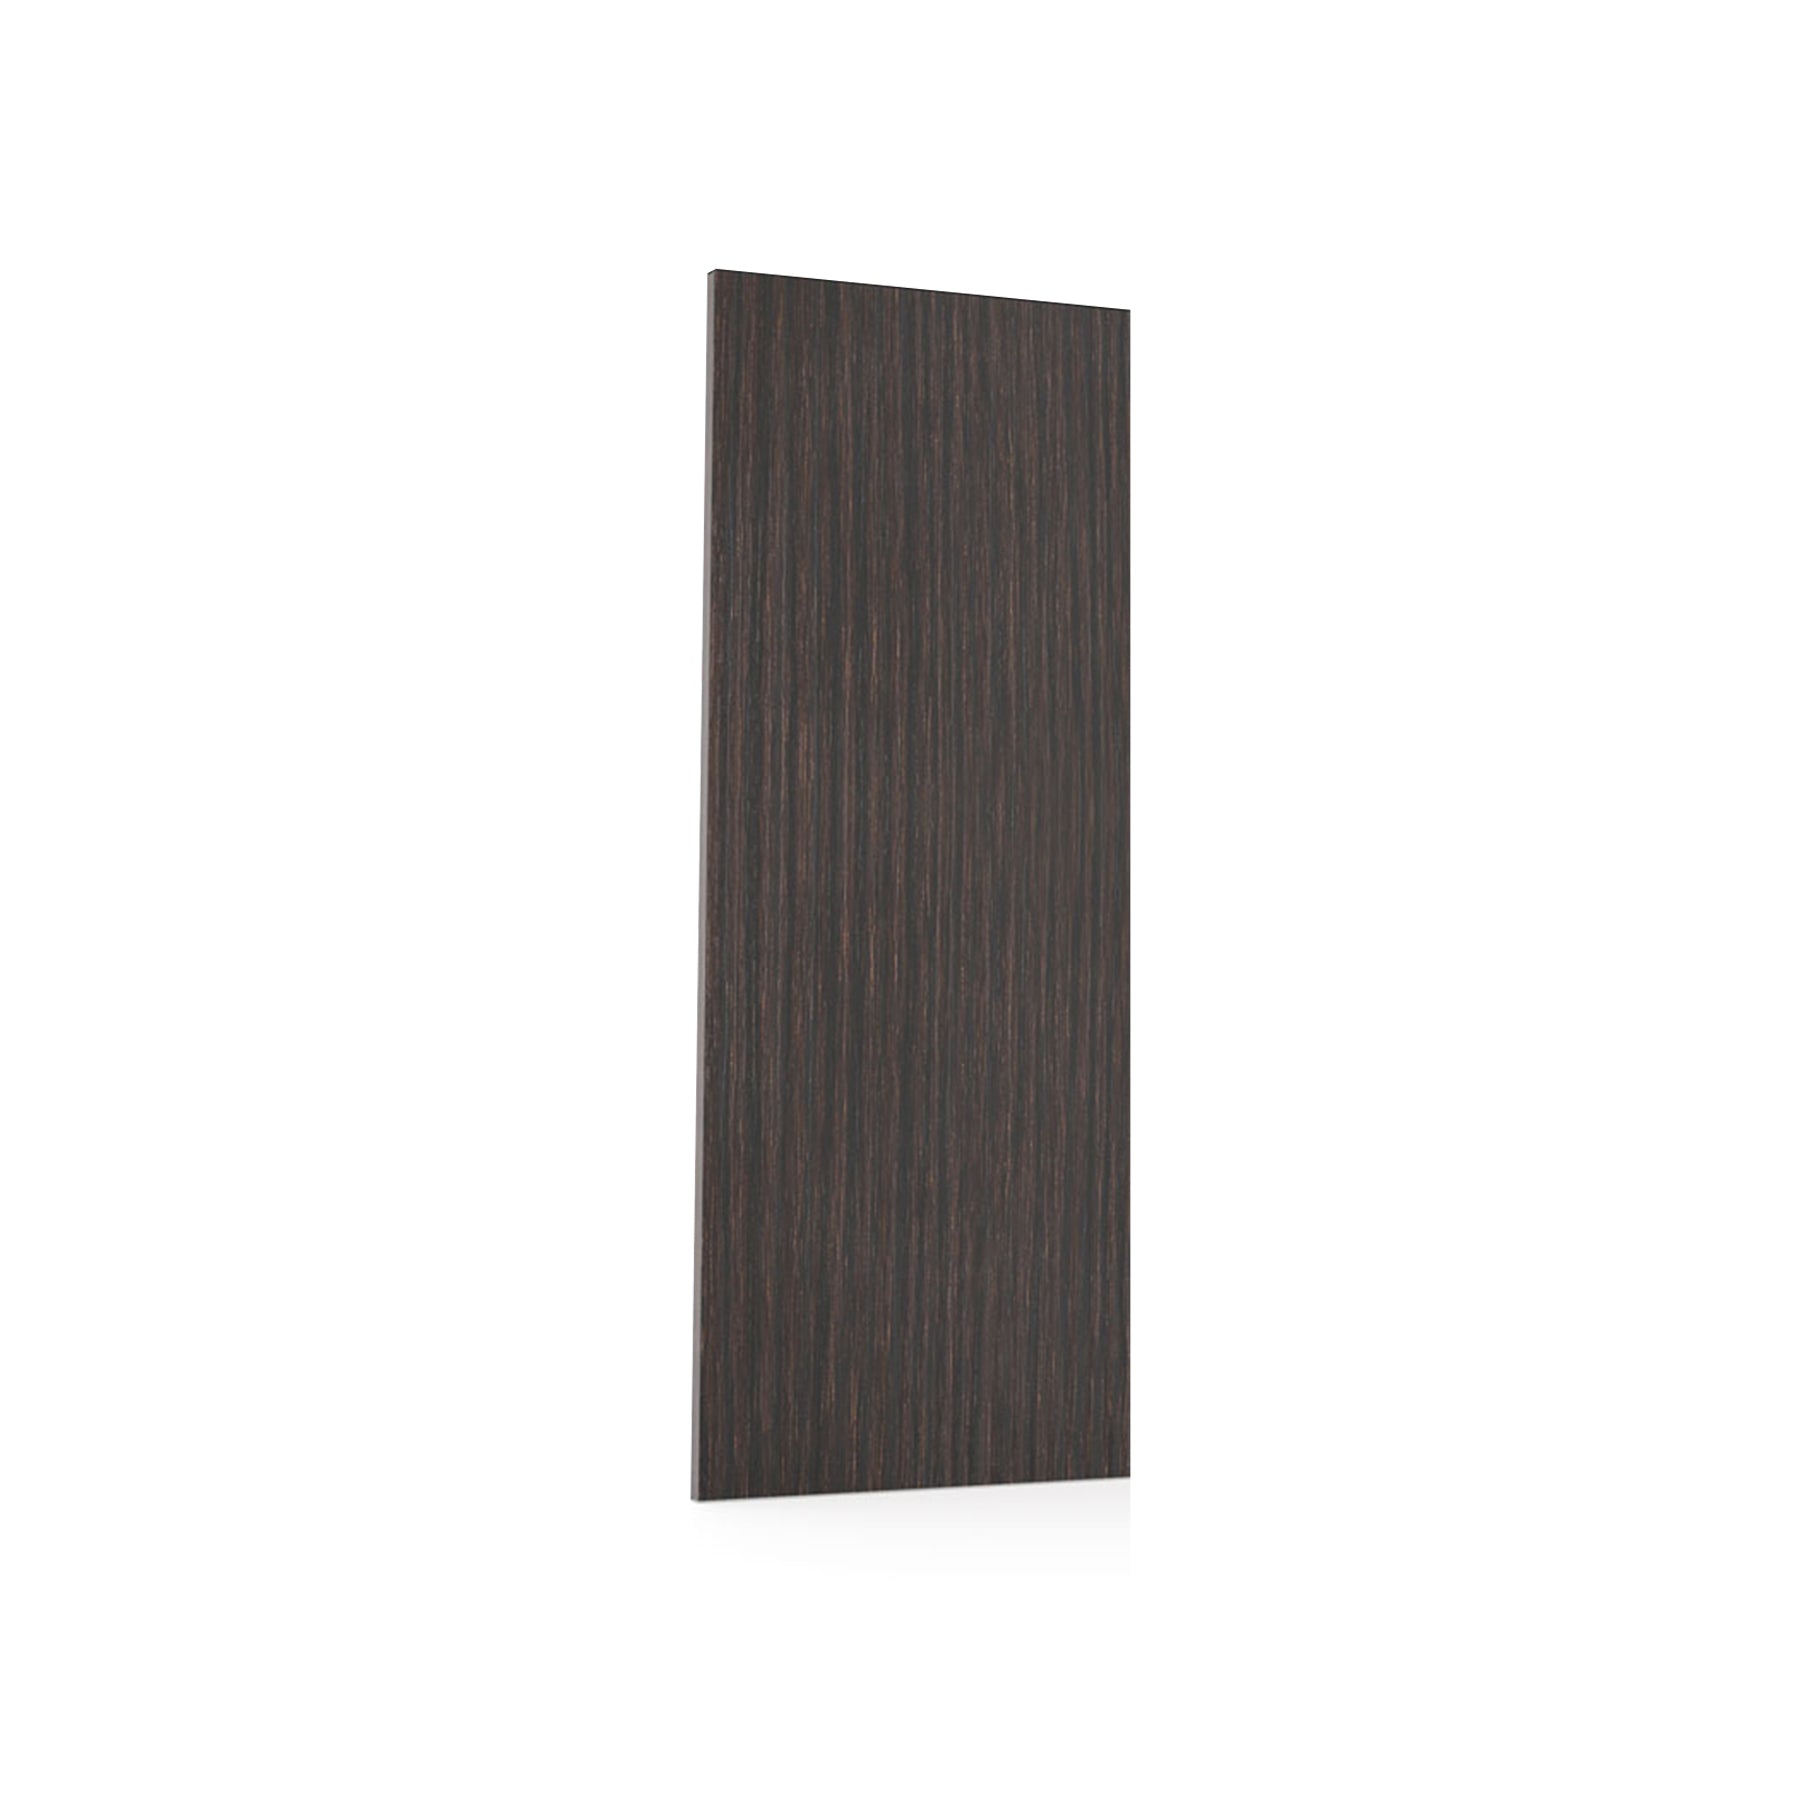 RTA - Brown Oak - Wall End Panels | 0.6"W x 36"H x 12"D